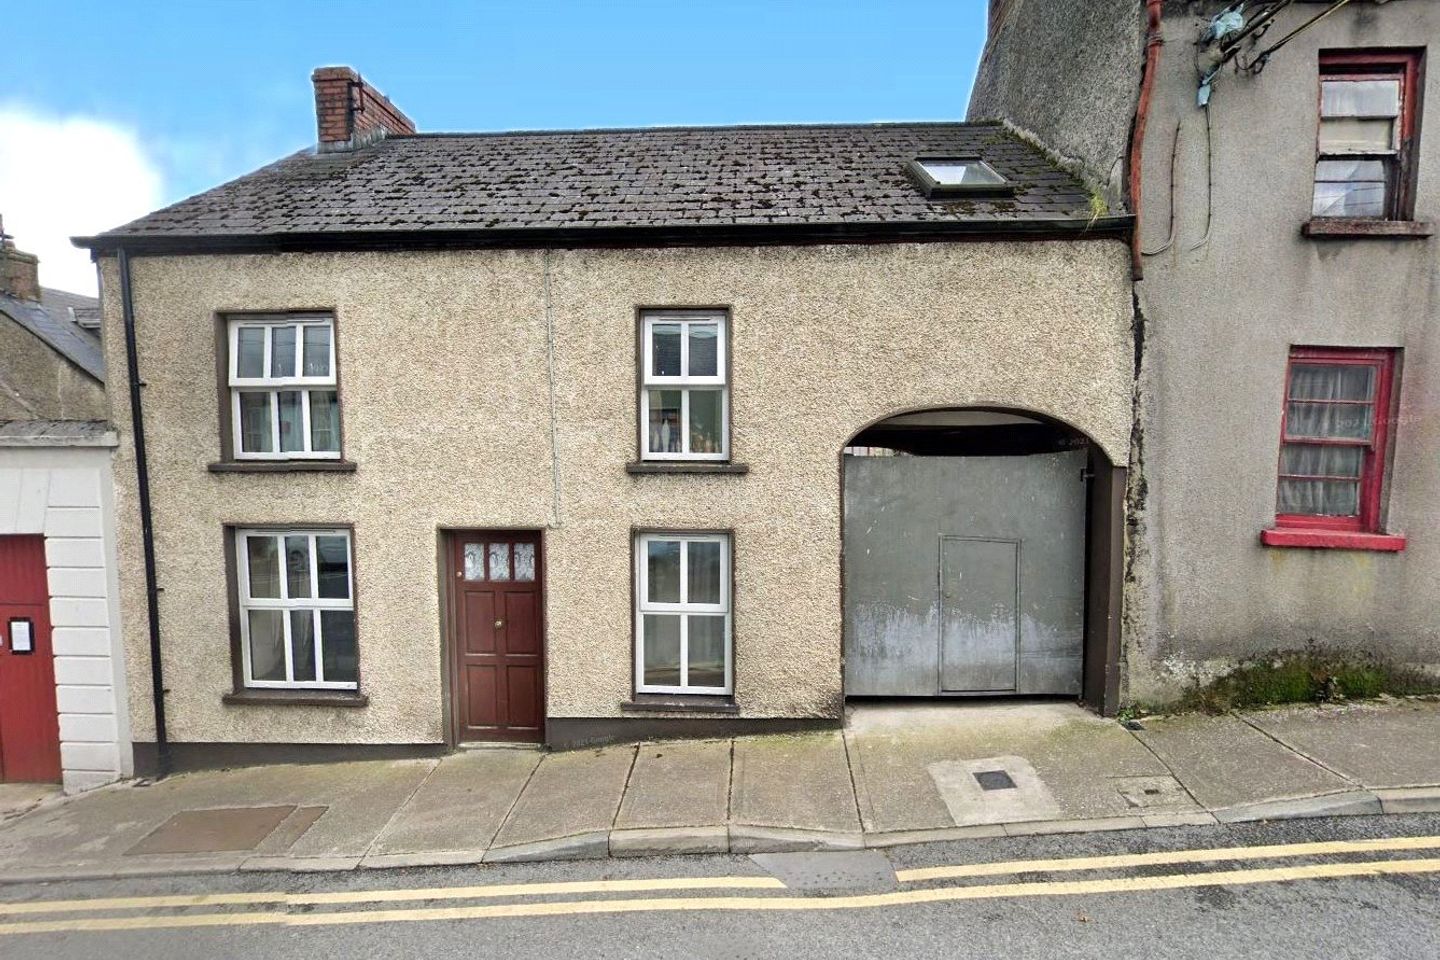 Henry Street, Castleblayney, Co. Monaghan, A75VR83